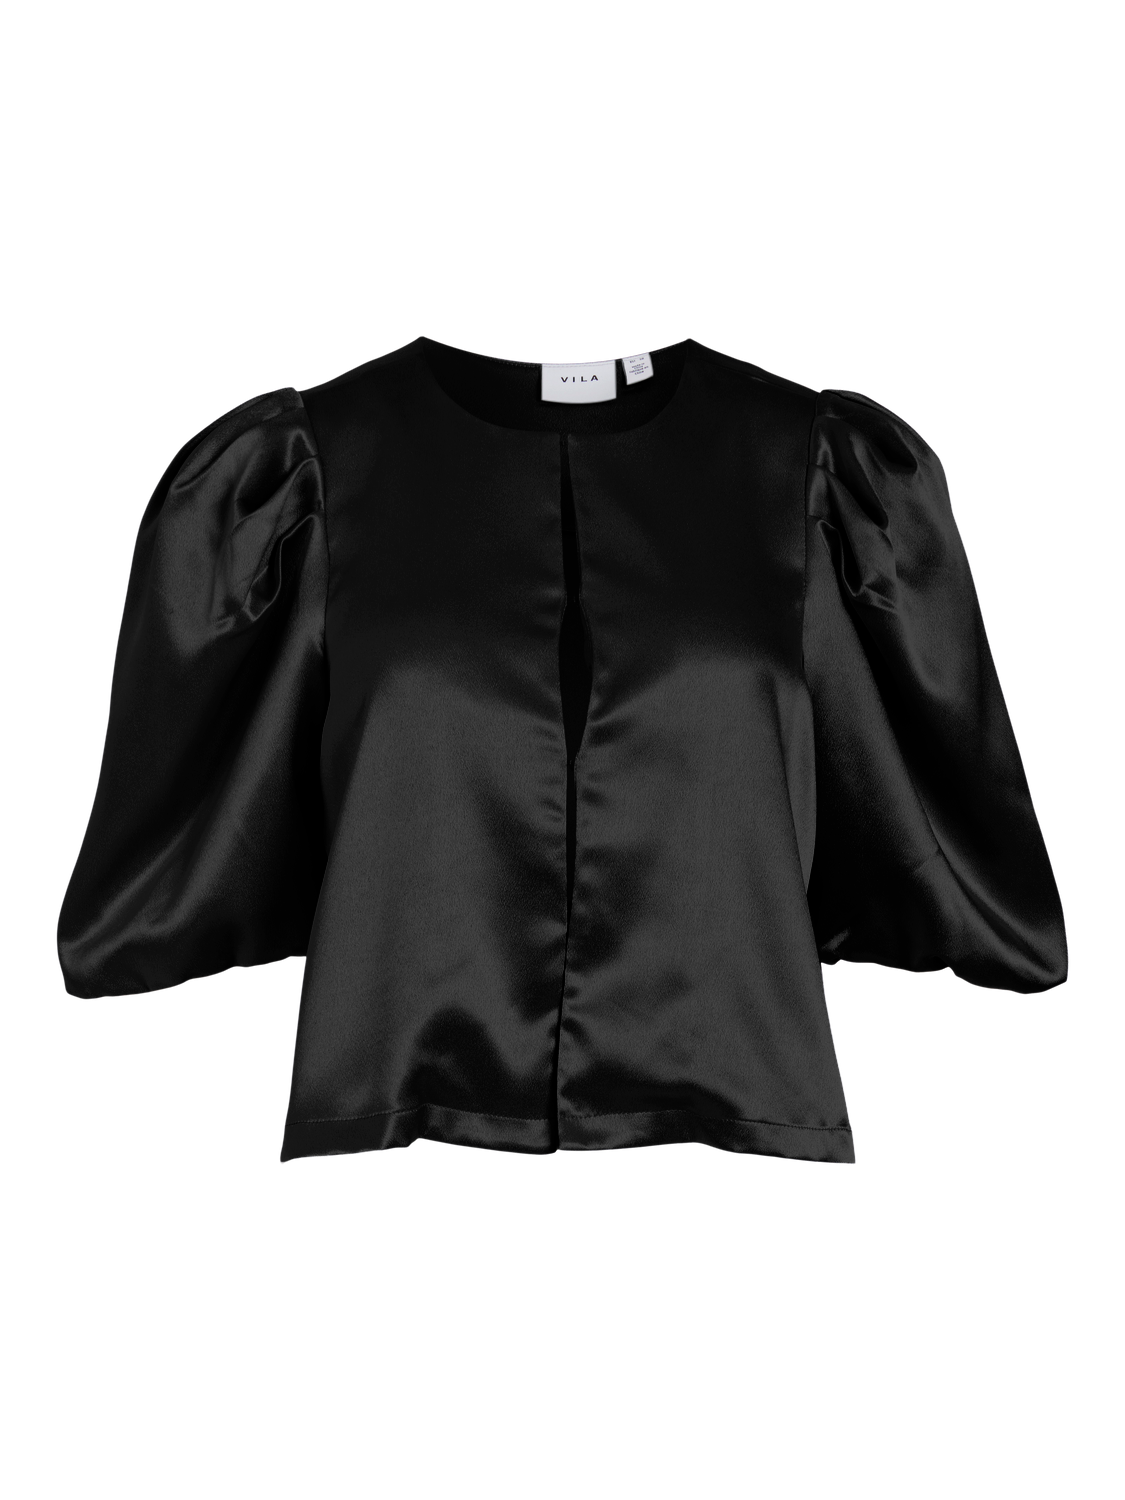 VISHINA T-Shirts & Tops - Black